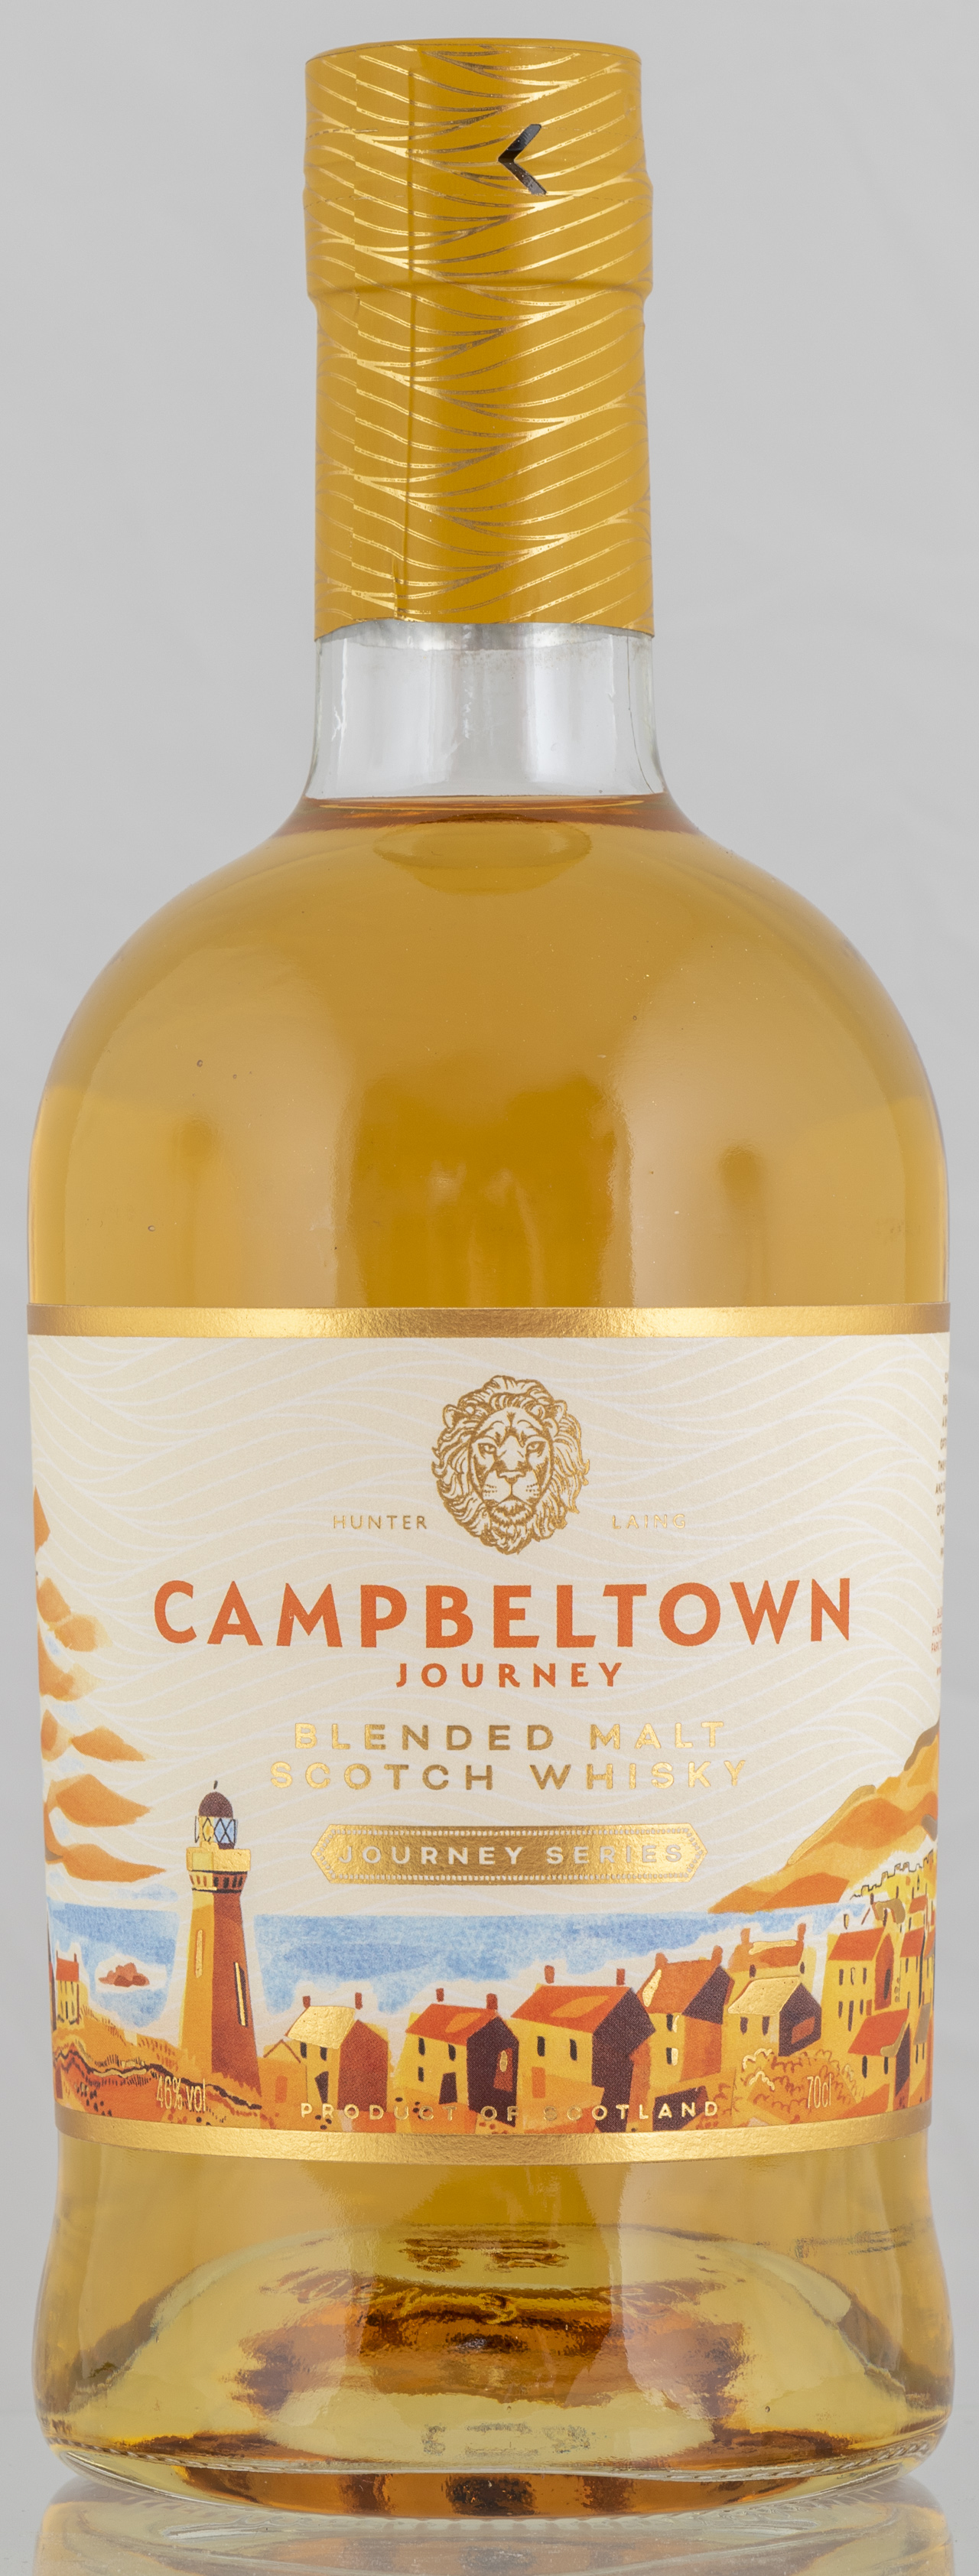 Billede: PHC_7322 - Hunter Laing Campeltown Journey Blended Malt - bottle front.jpg